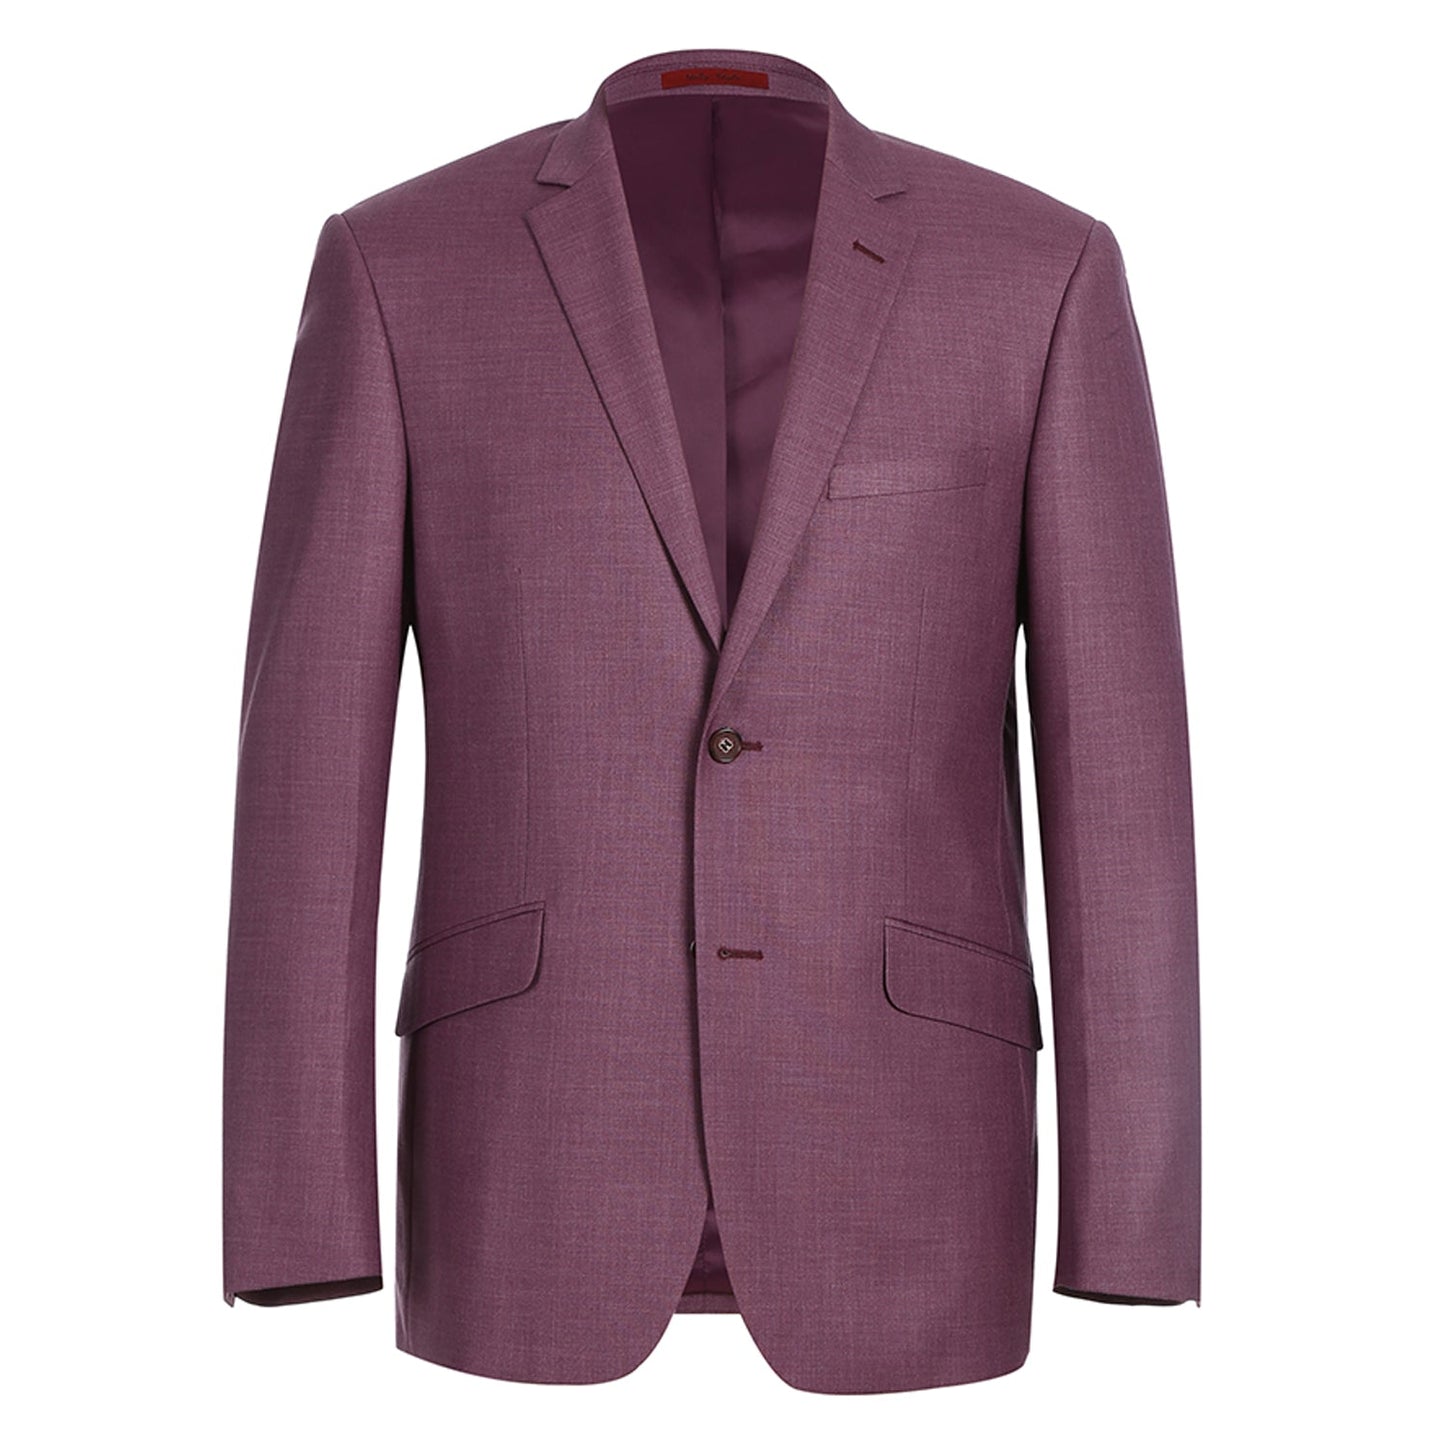 293-16 Men's Slim Fit Notch Lapel Berry Solid Suit